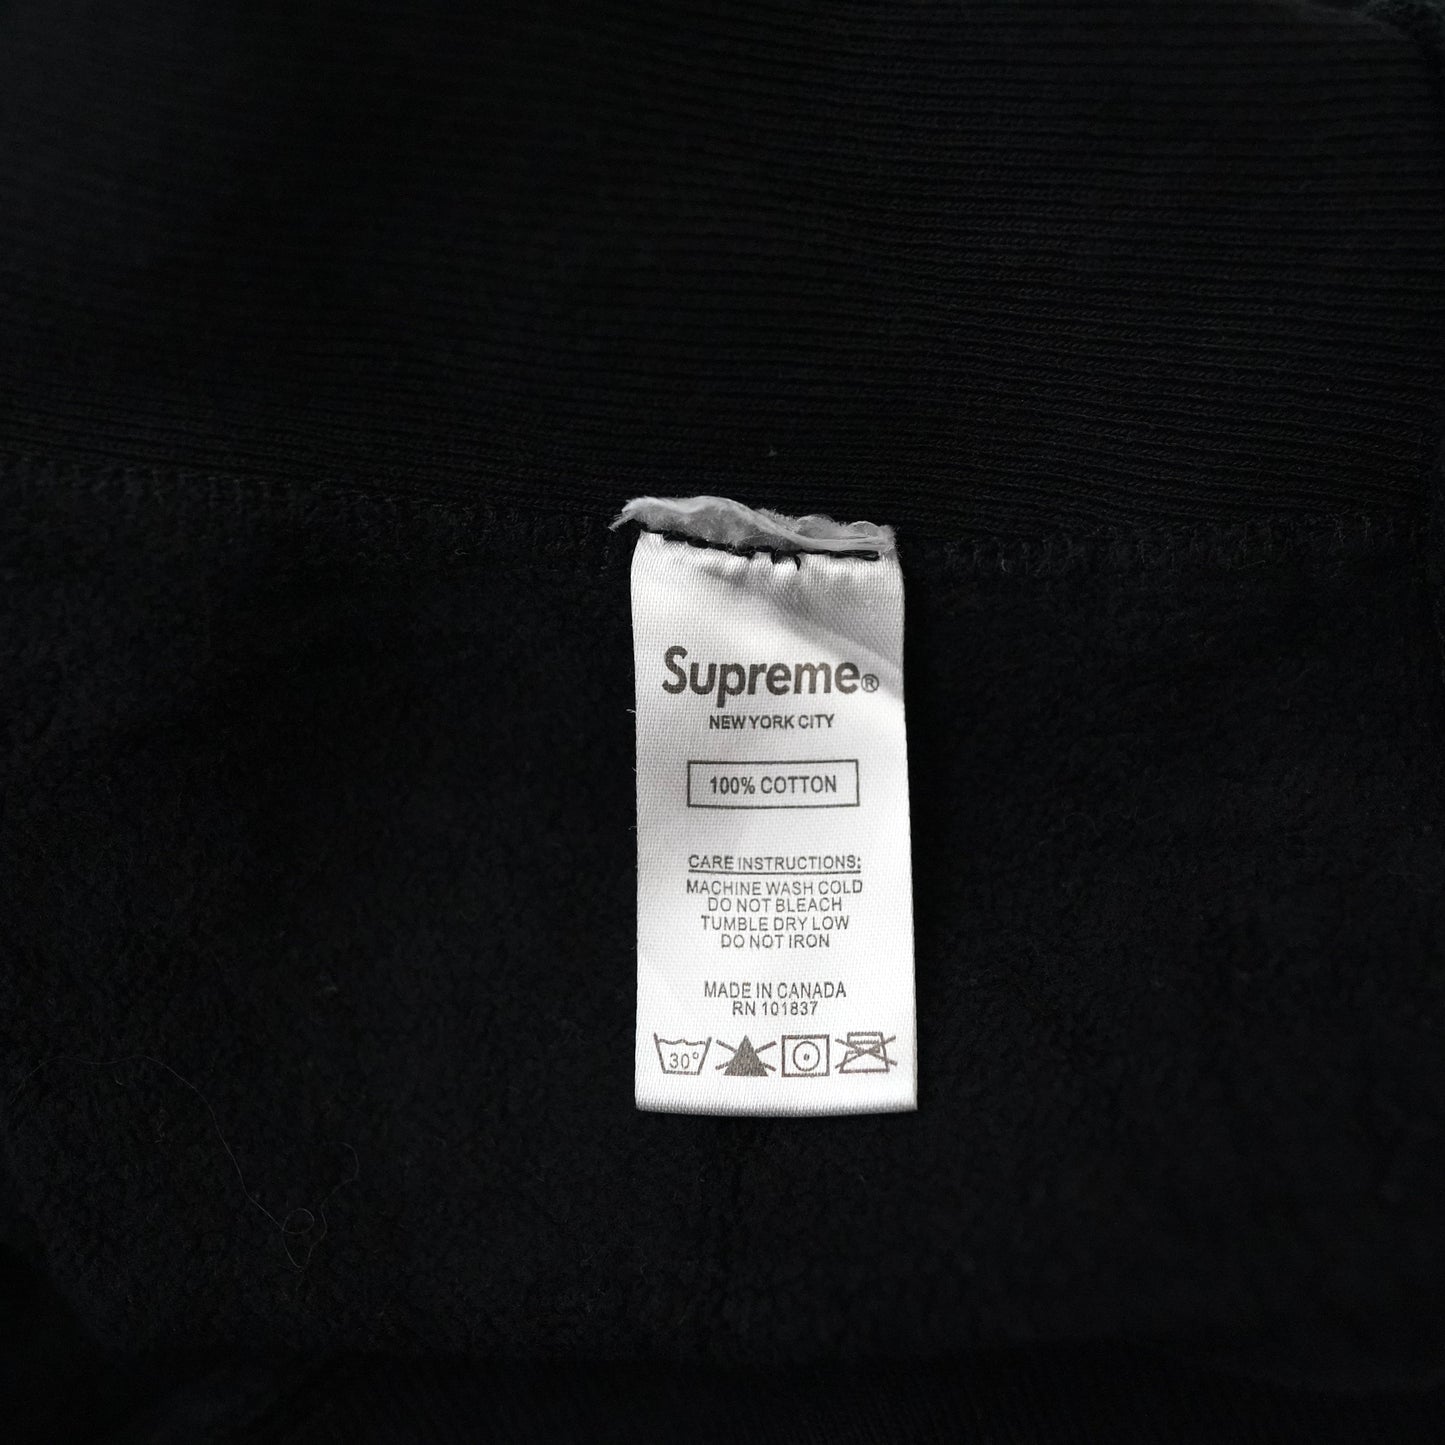 Supreme KAWS Chalk logo hoodie